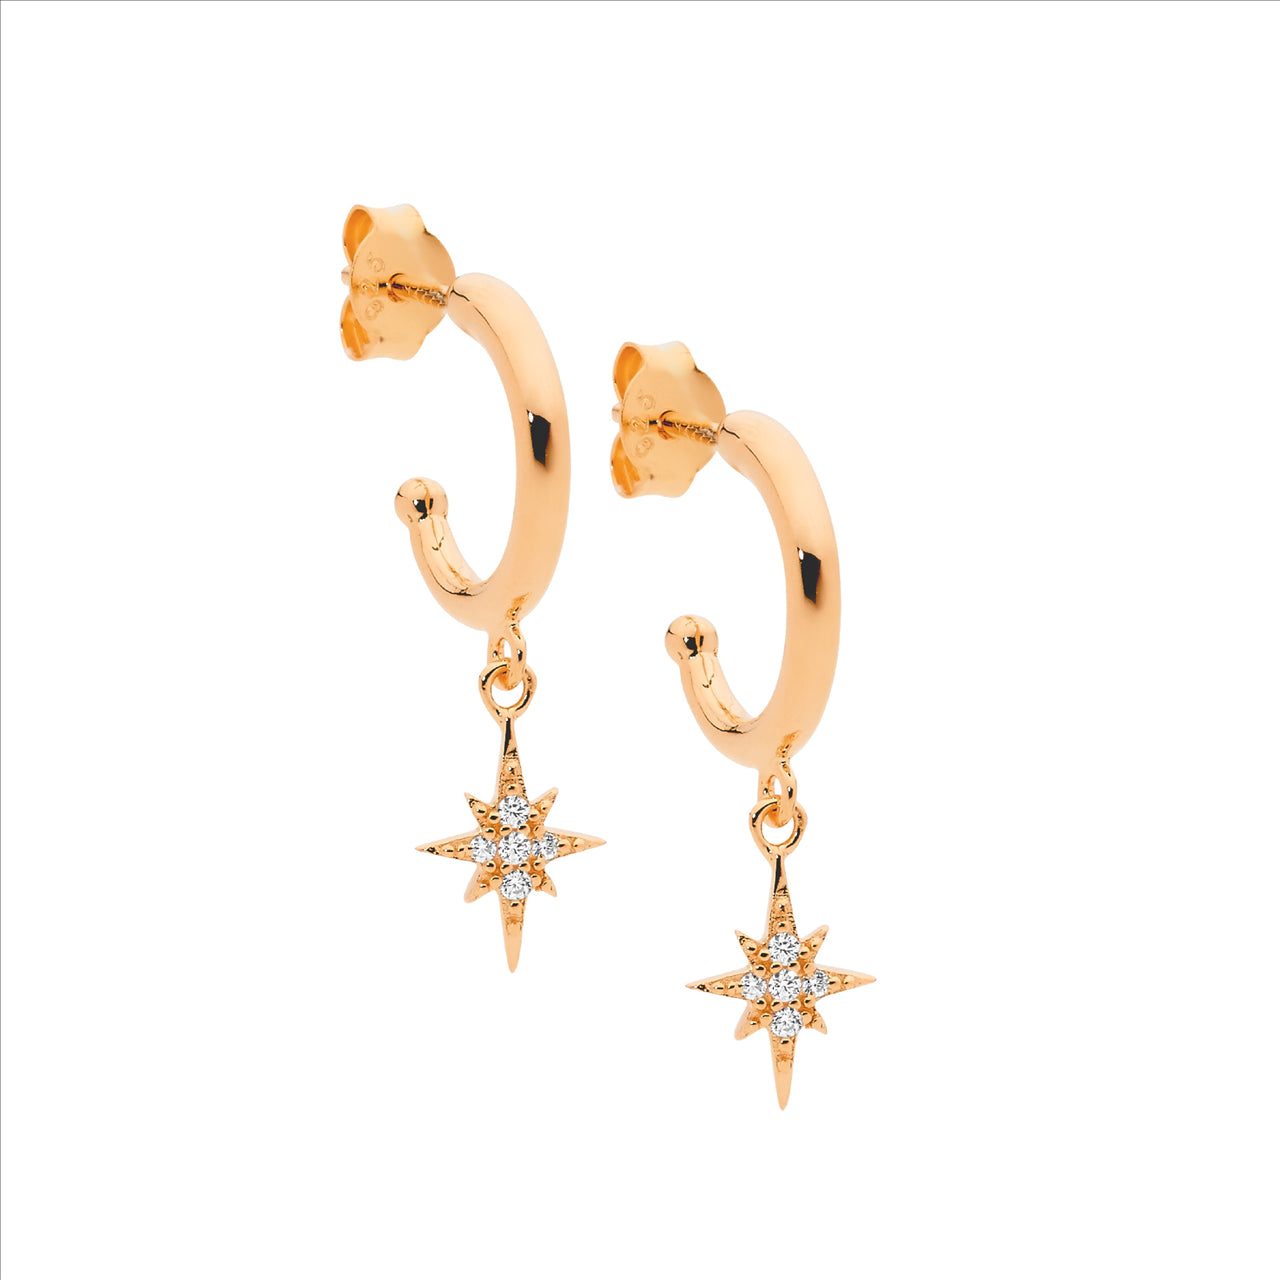 Sterling Silver 13mm hoop earrings, cz star drop, rose gold plating